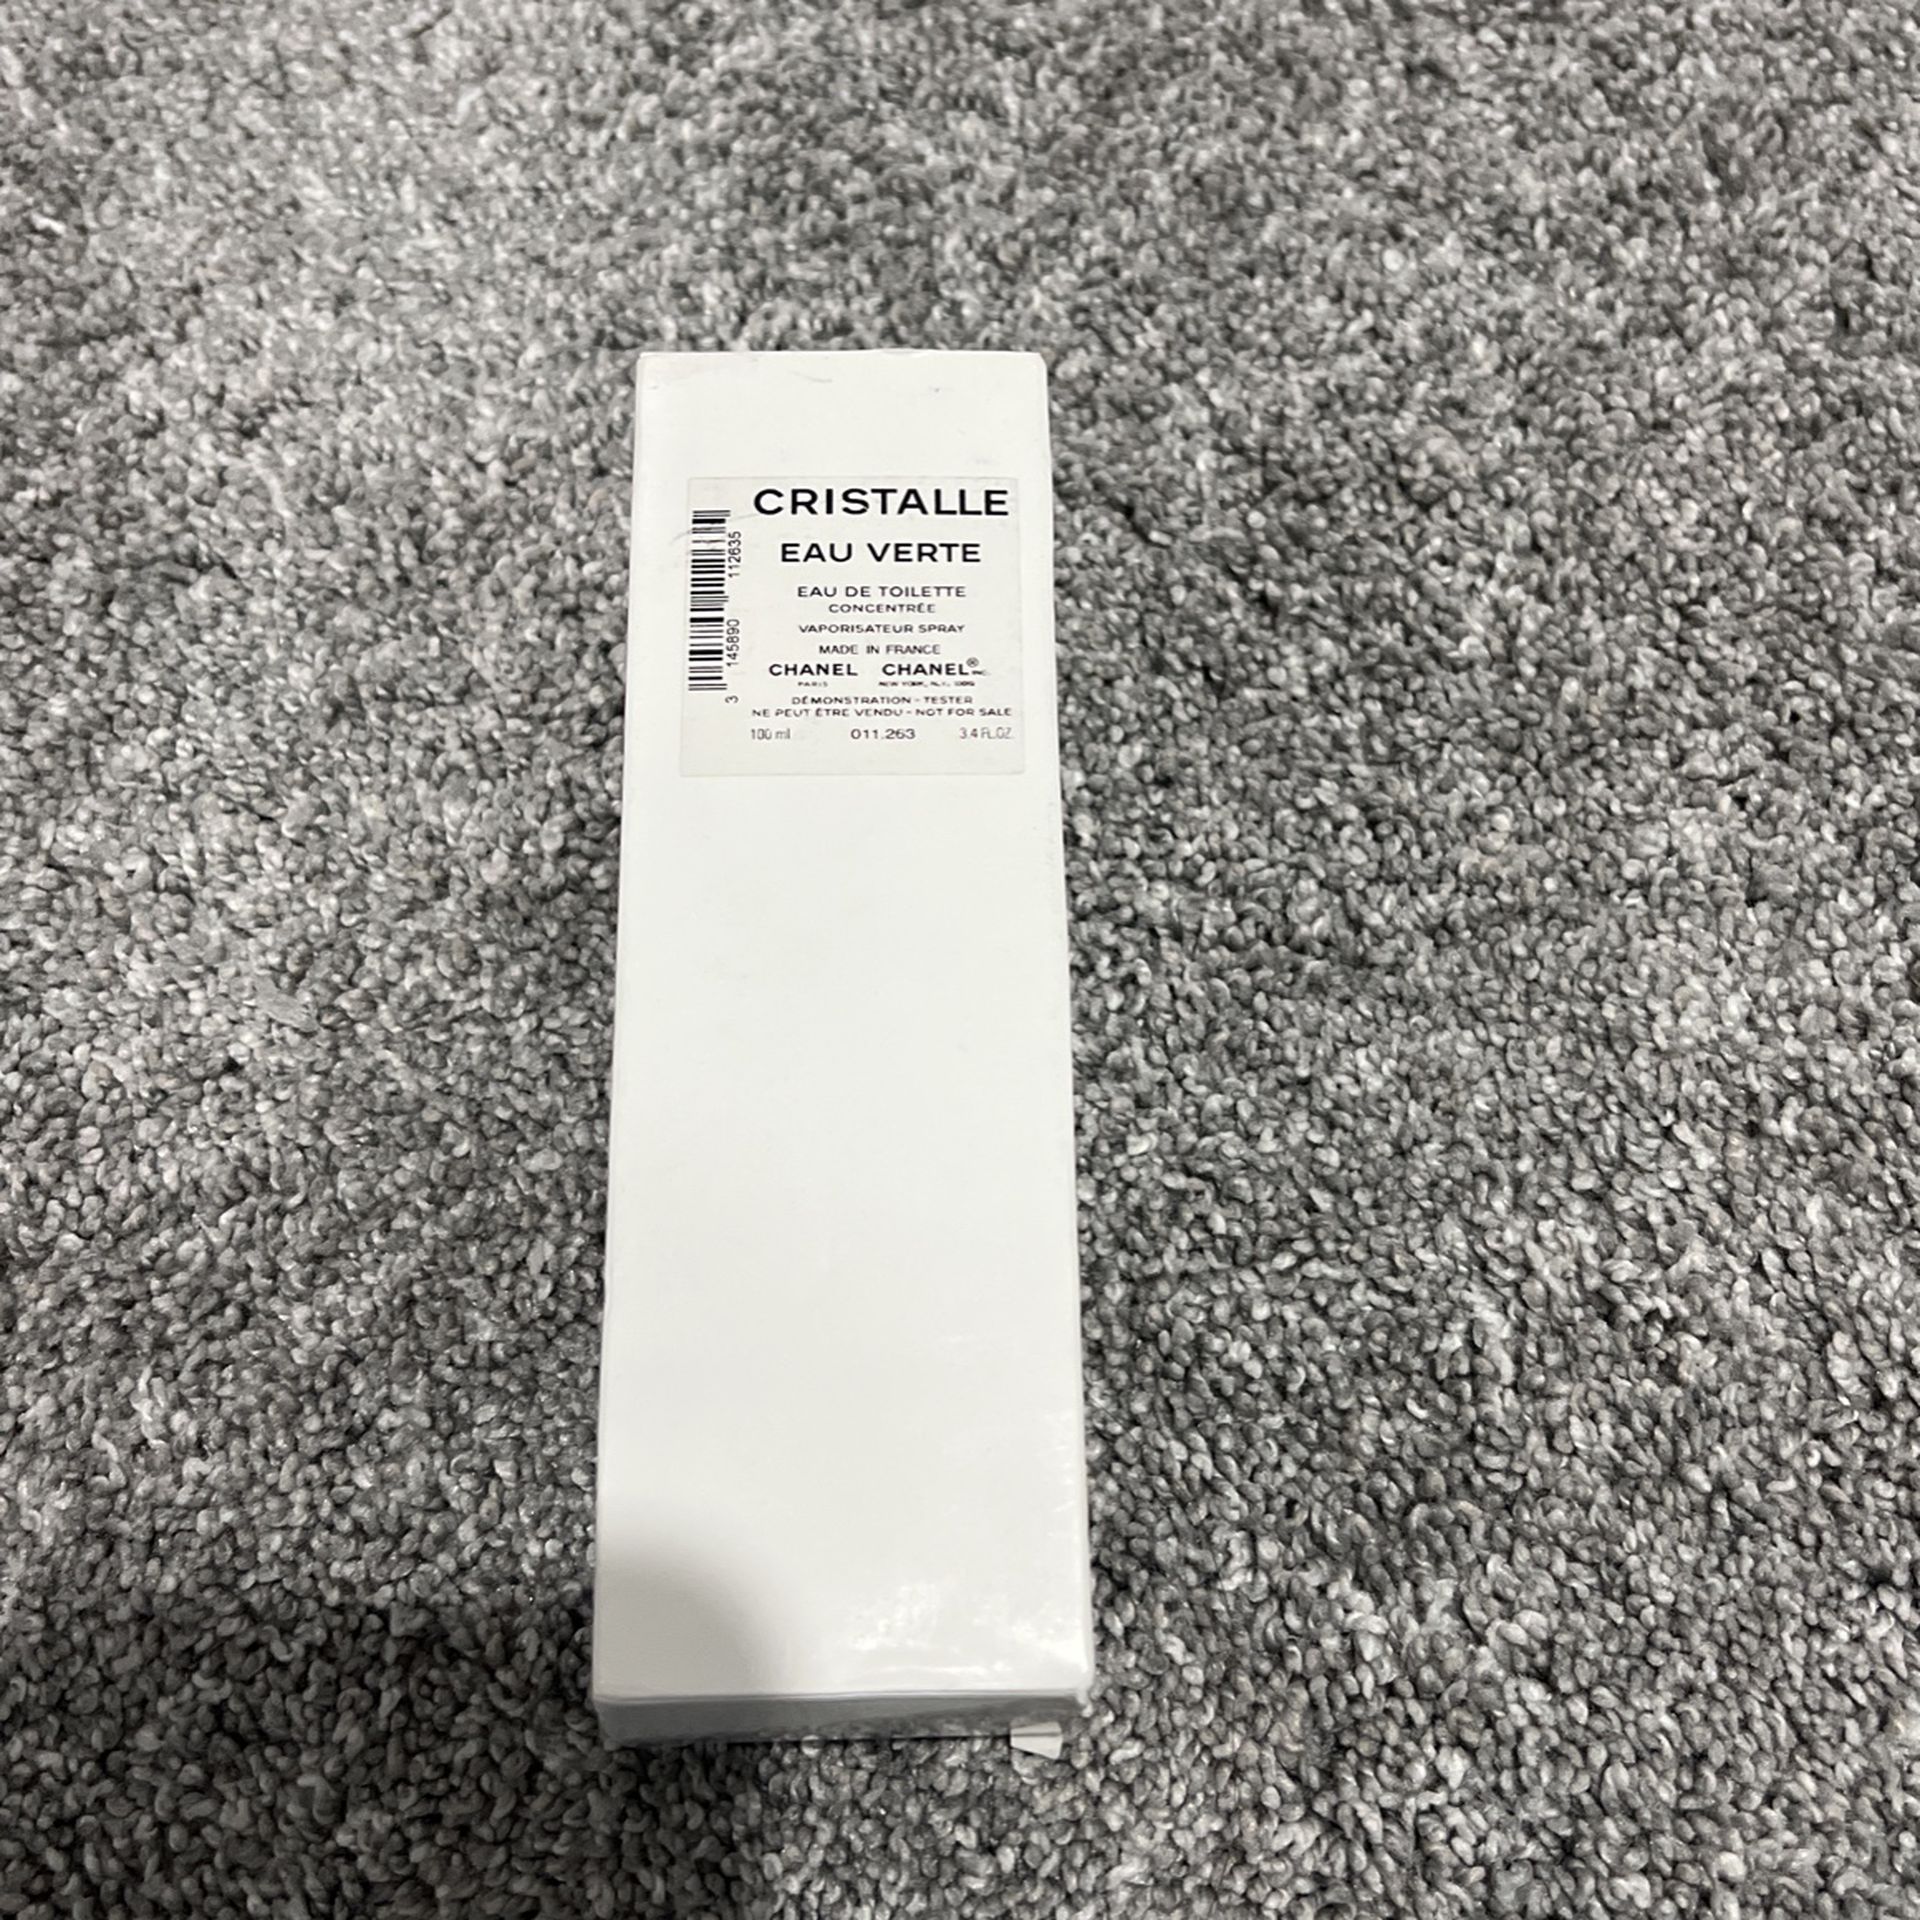 Chanel Cristalle Eau Verte Concentree Perfume 3.4 Oz Eau De Toilette Spray